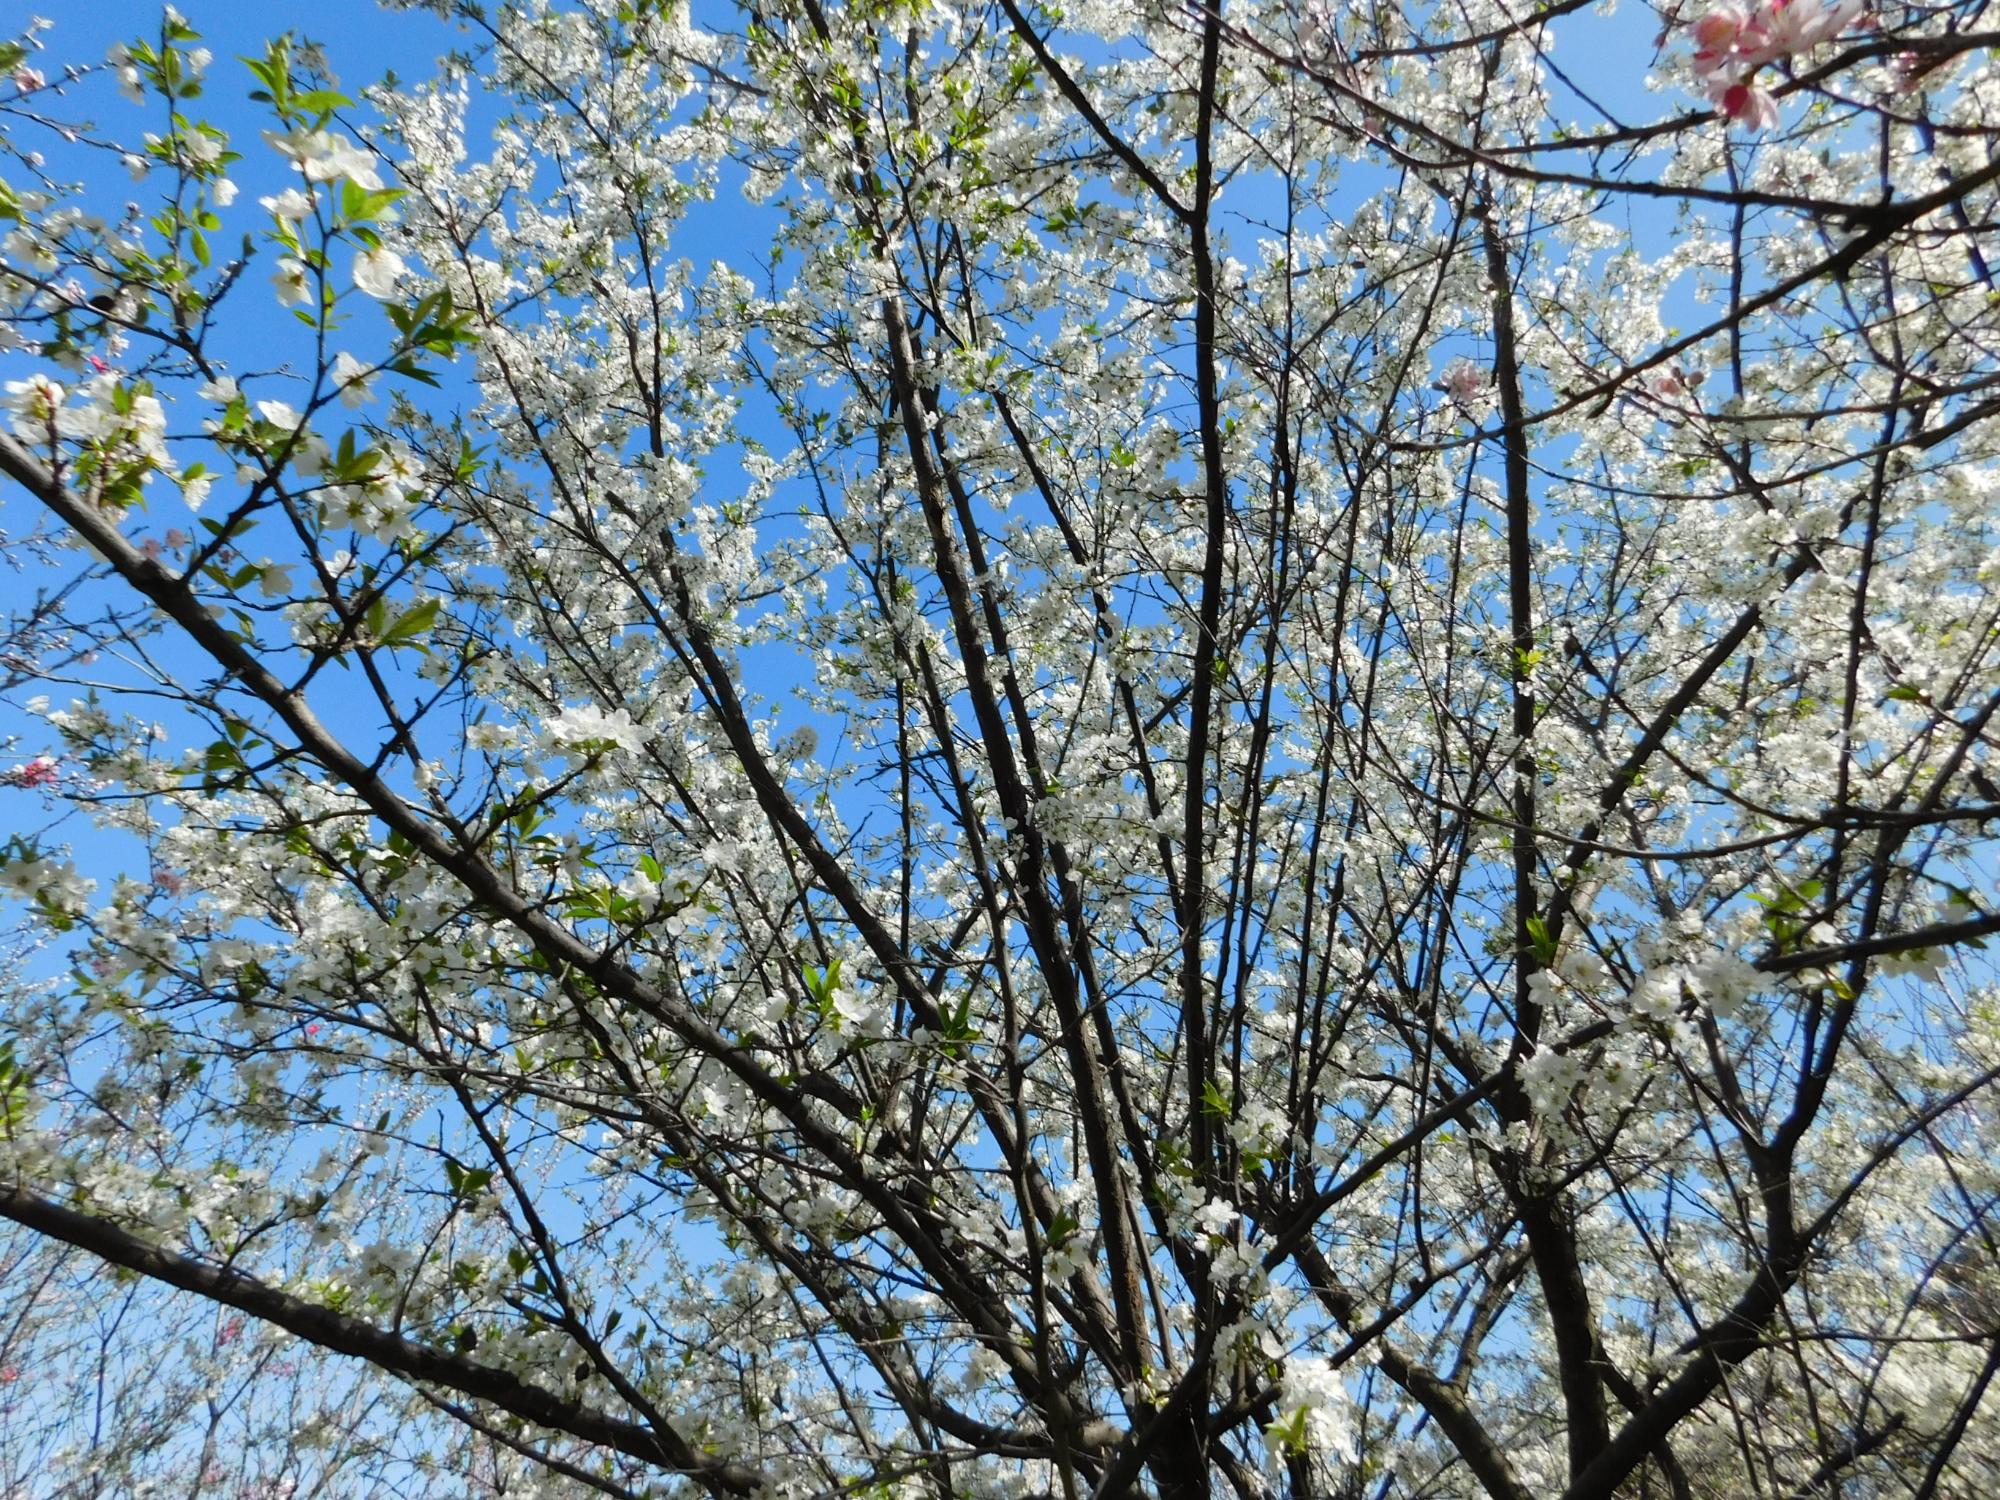 ハナモモの丘の中に、1本アンズの木があり白い花が咲きました。